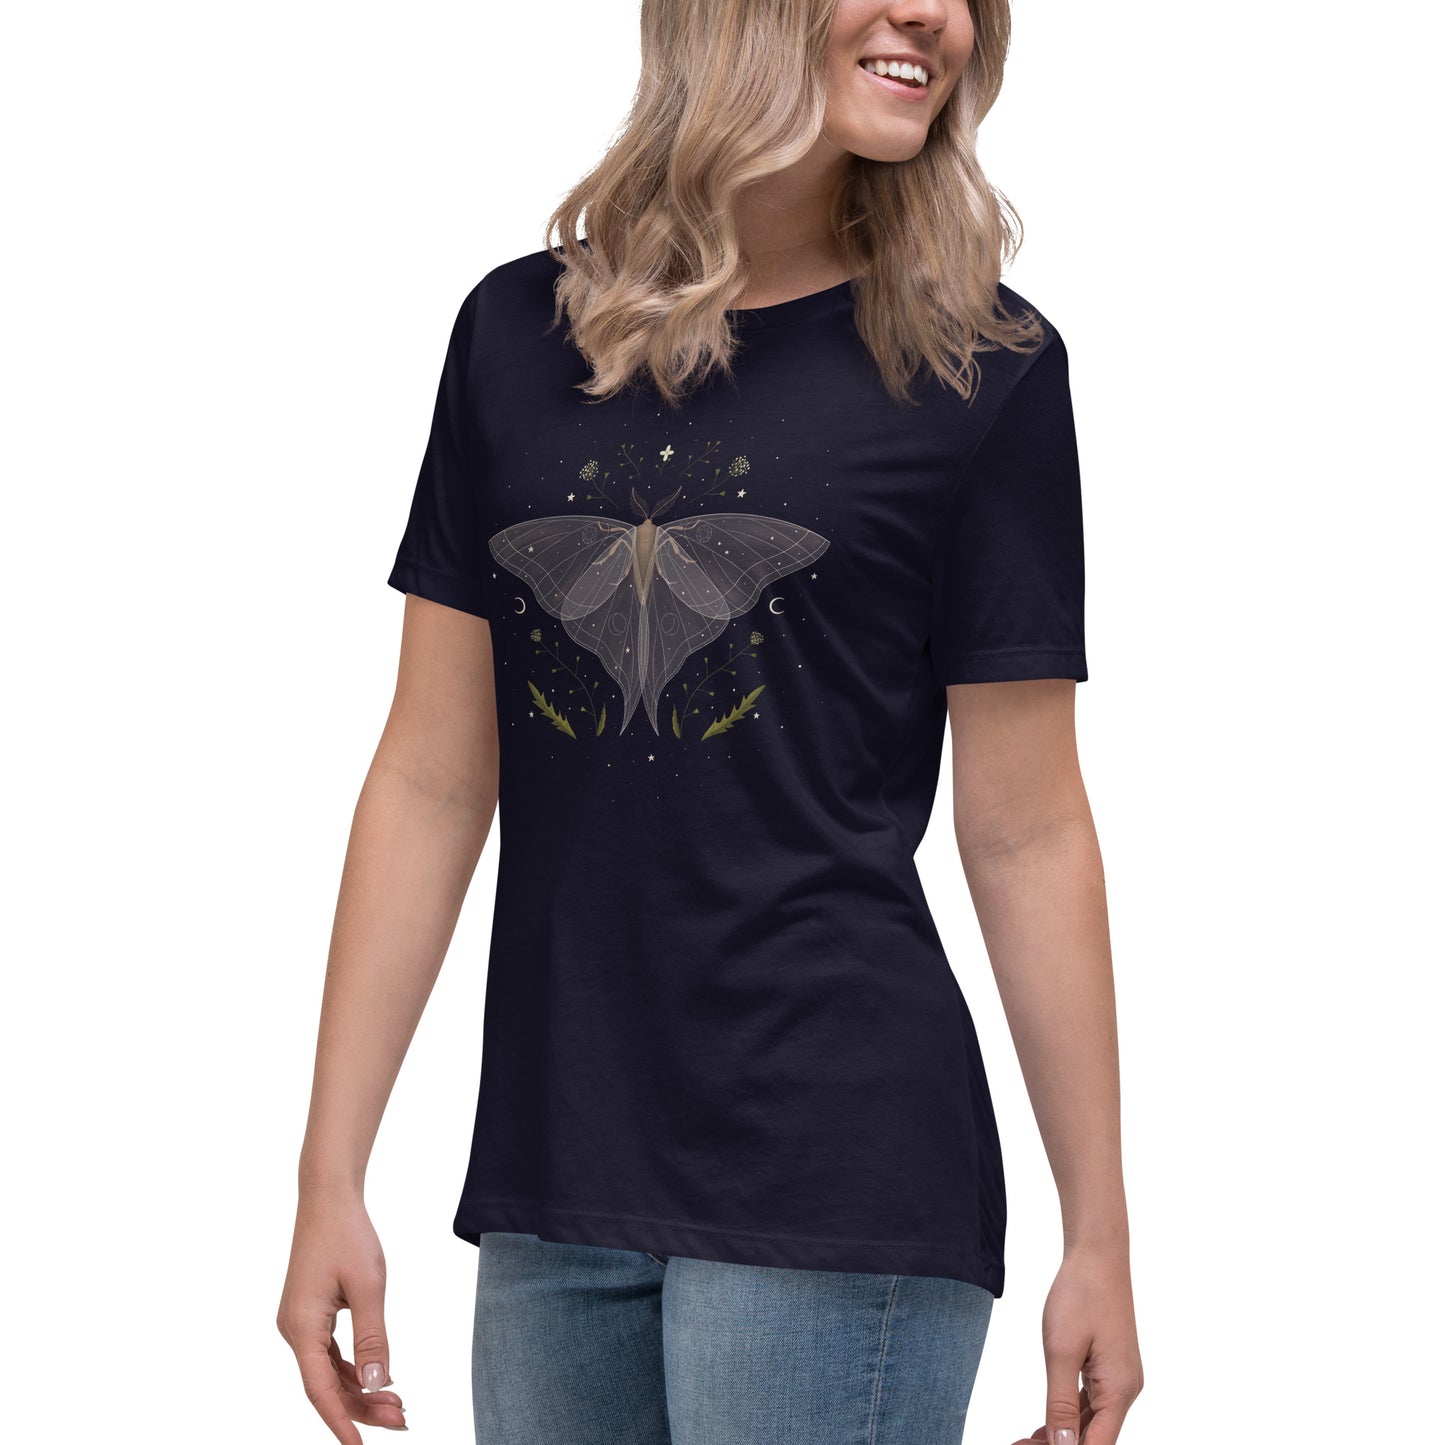 Luna Moth Women's Relaxed T-Shirt